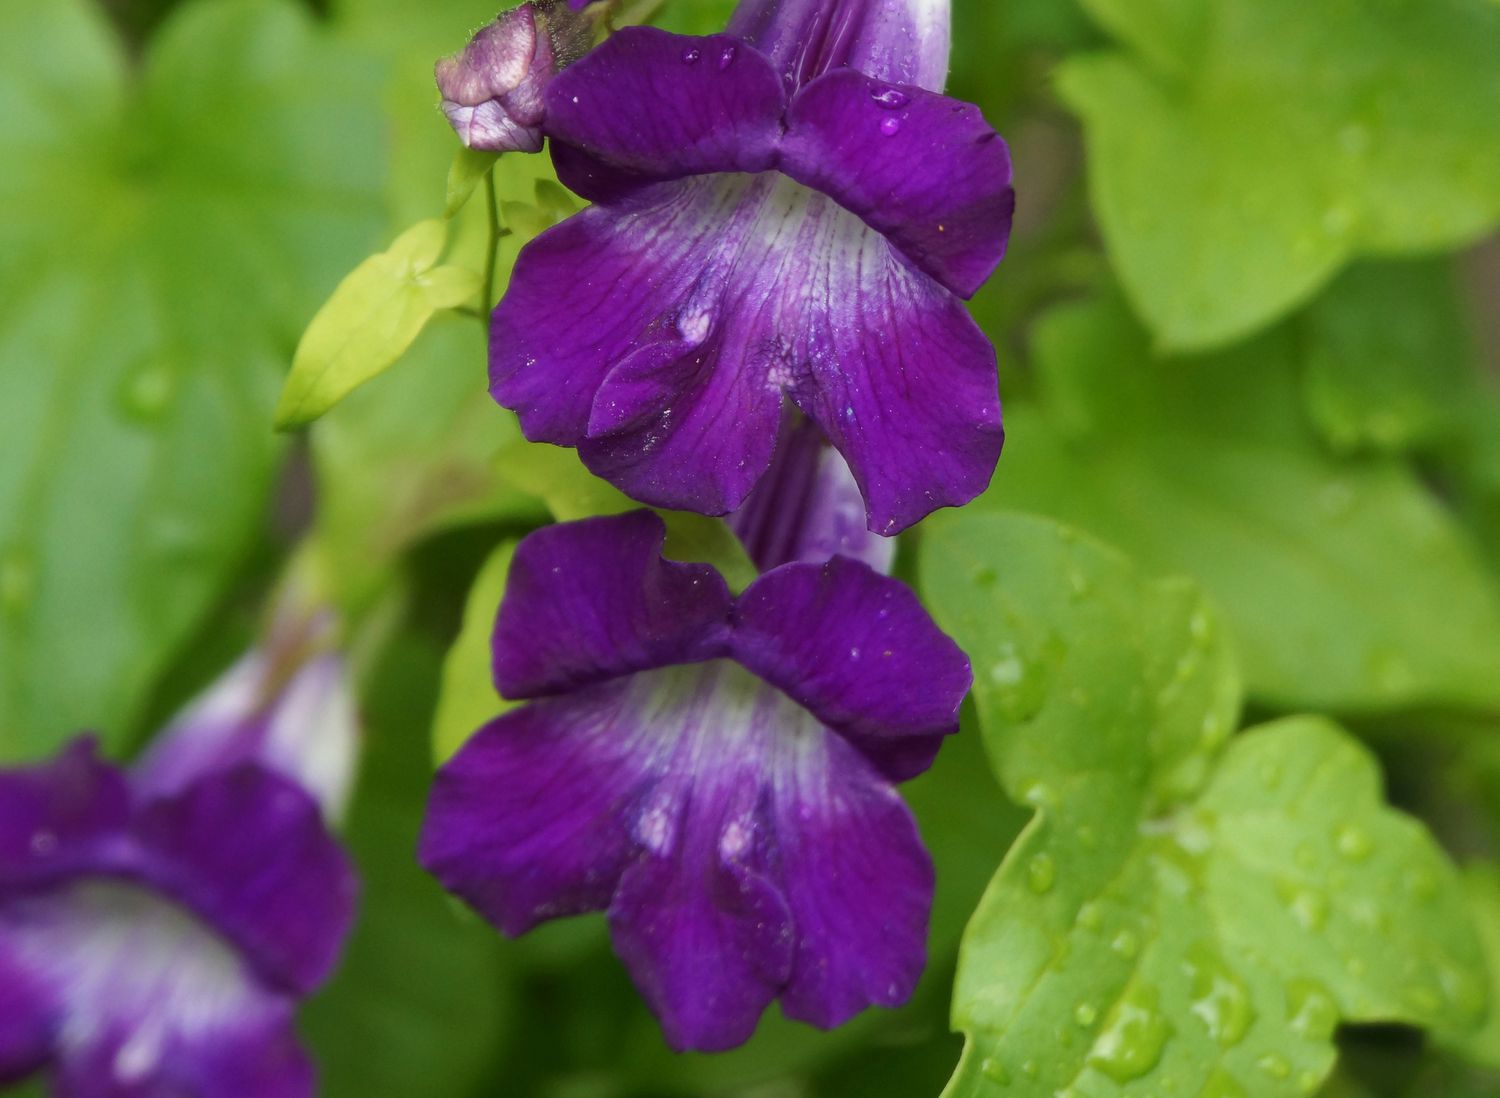 Löwenmäulchen-Ranke mit violetten und weißen trompetenförmigen Blüten mit Wassertropfen in Großaufnahme